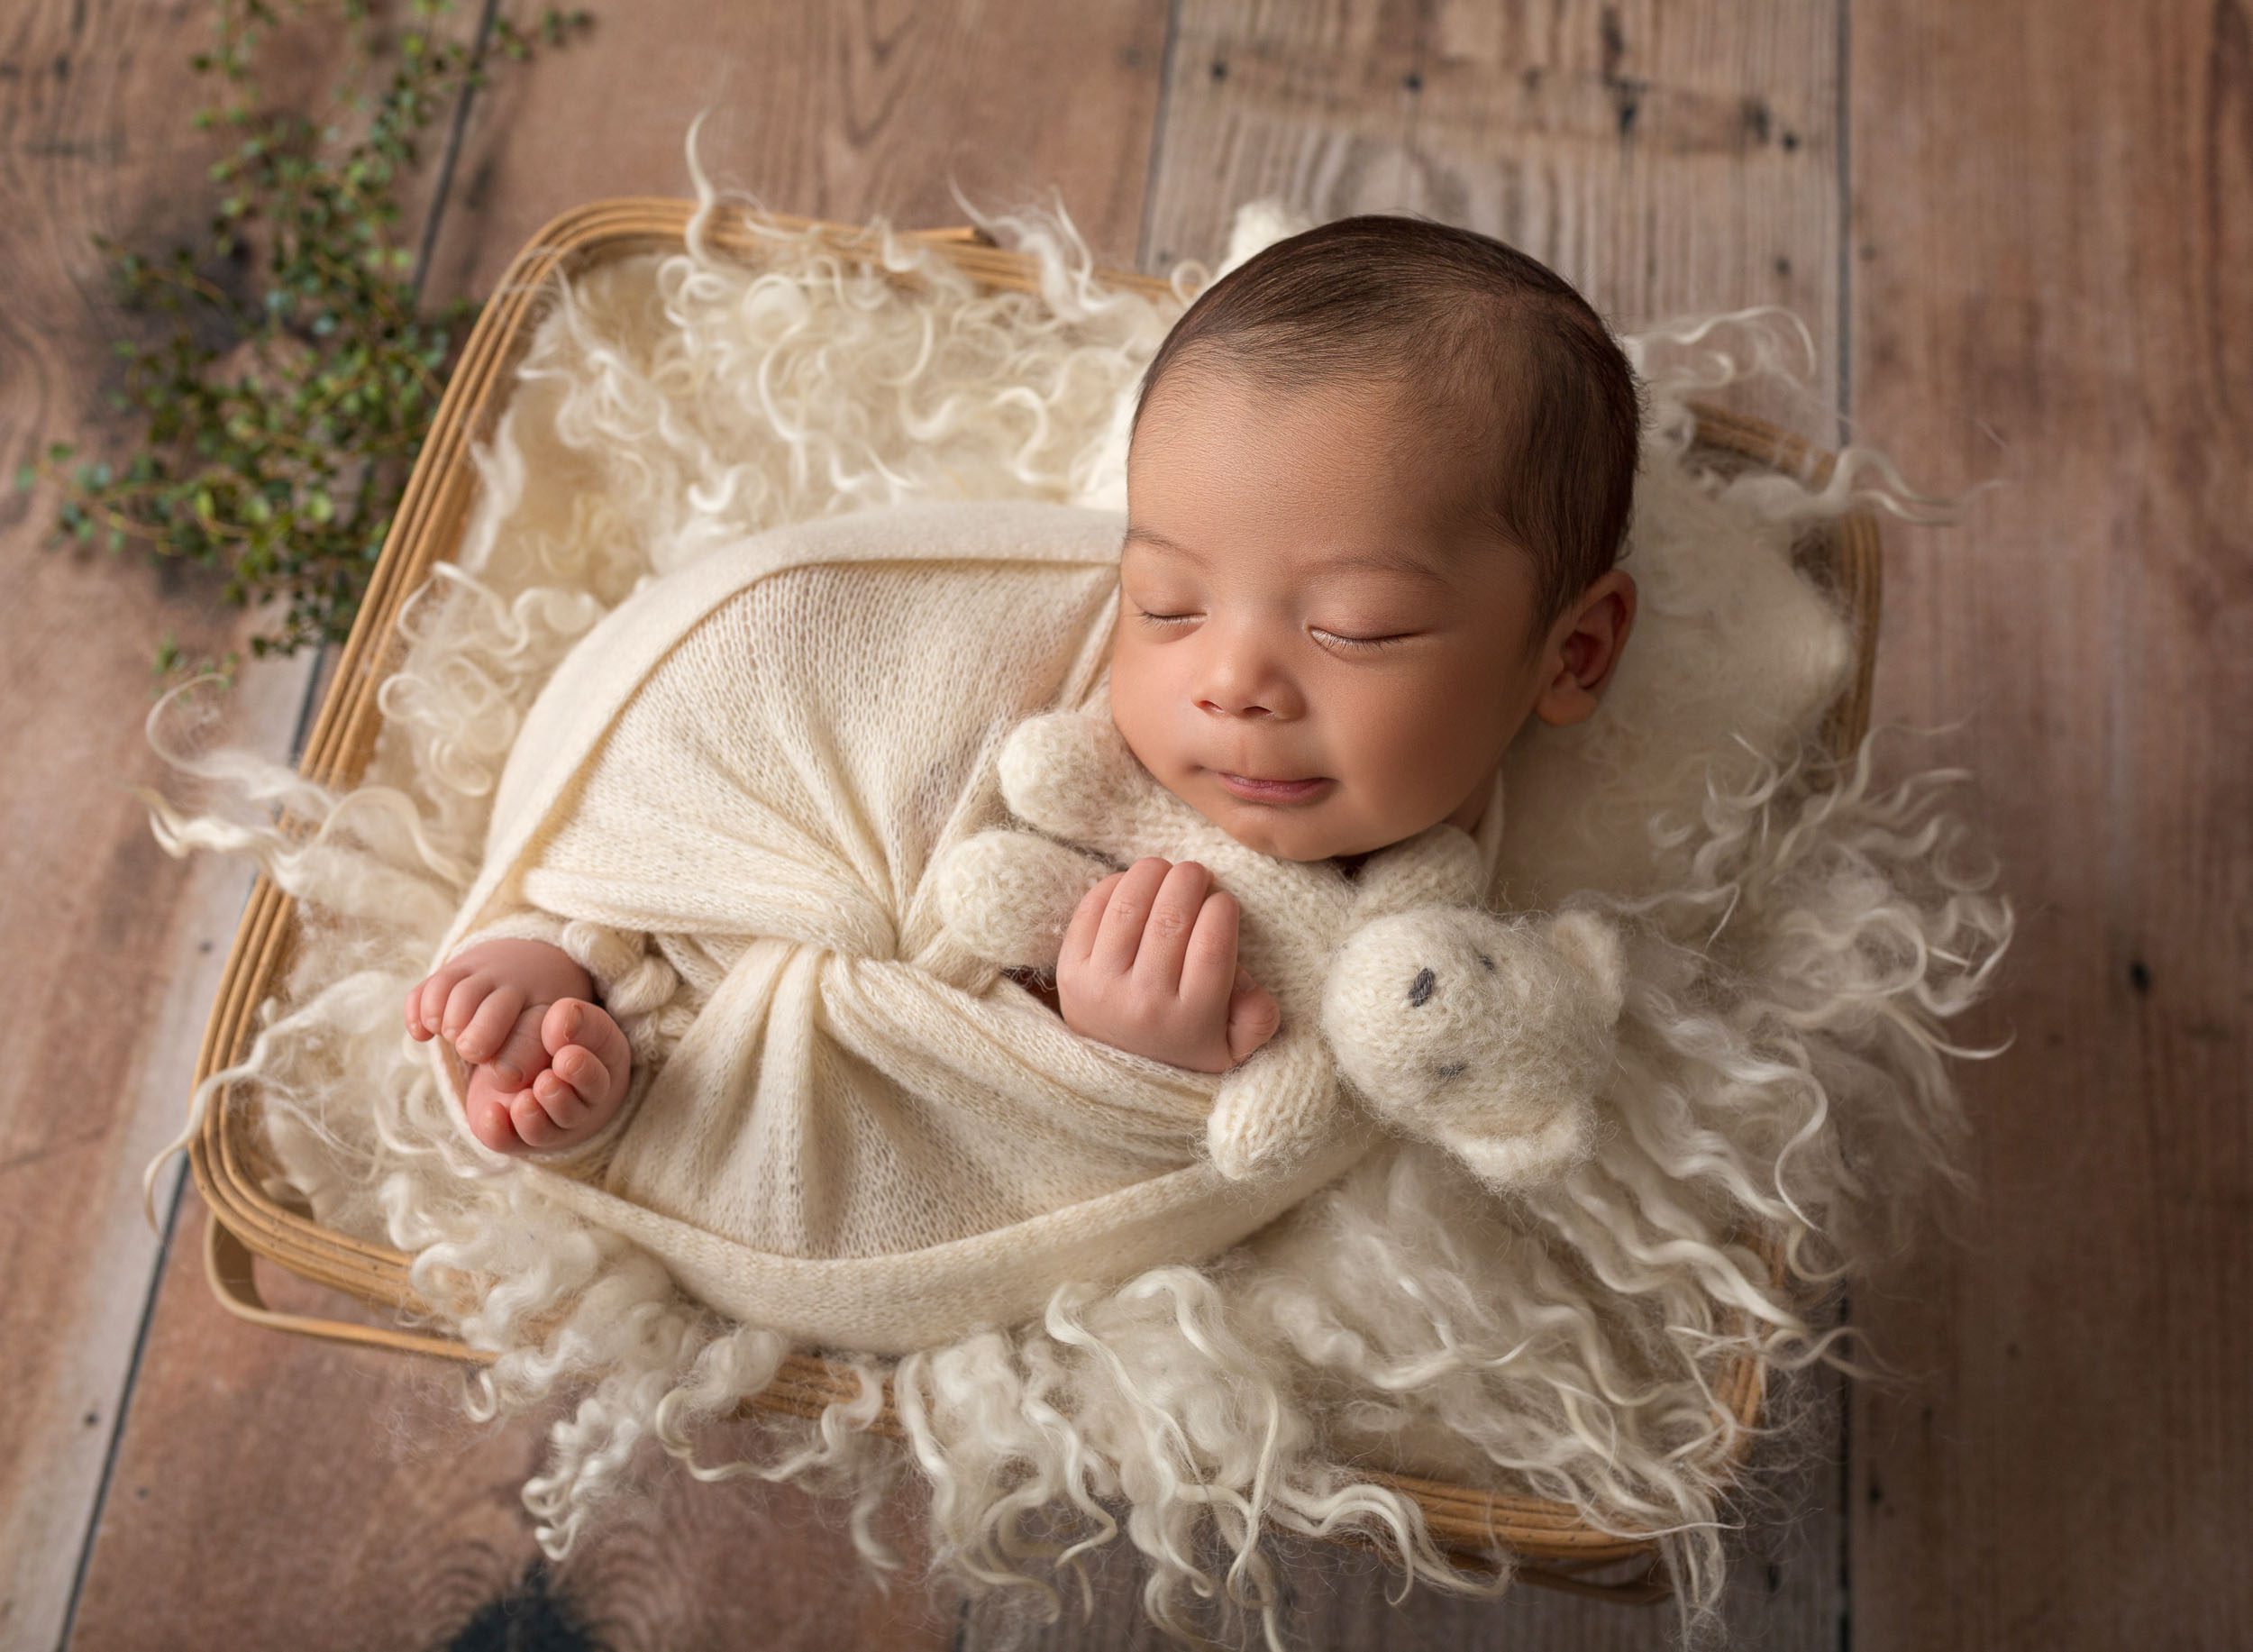 baby boy swaddled in white, snuggling teddy bear in basket